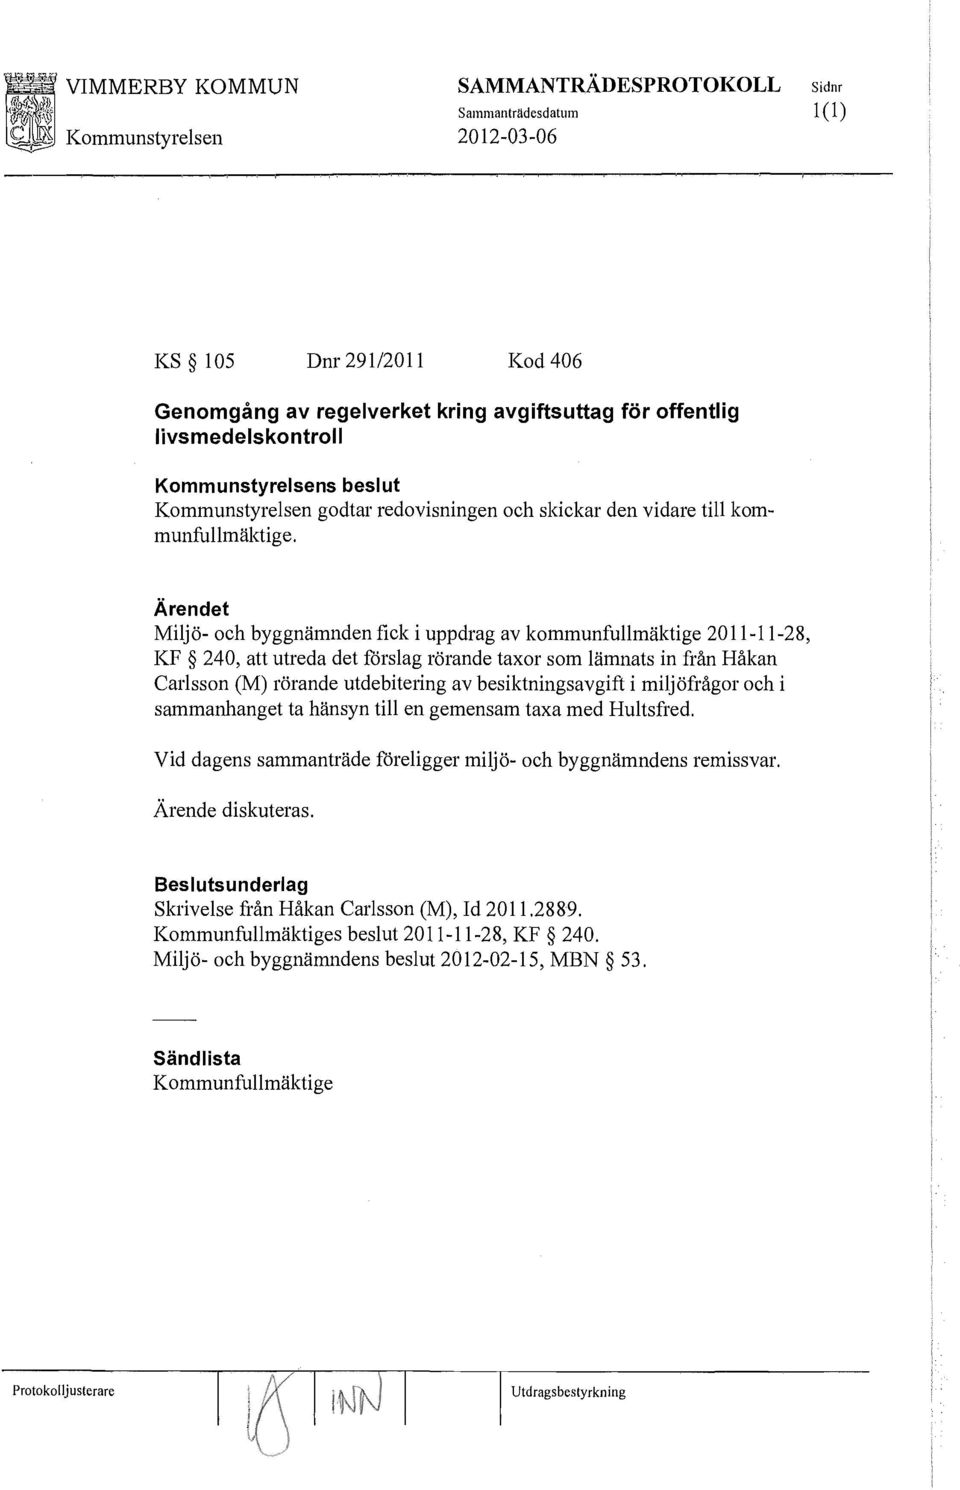 Miljö- och byggnämnden fick i uppdrag av kommunfullmäktige 2011-11-28, KF 240, att utreda det förslag rörande taxor som lämnats in från Håkan Carlsson (M) rörande utdebitering av besiktningsavgift i